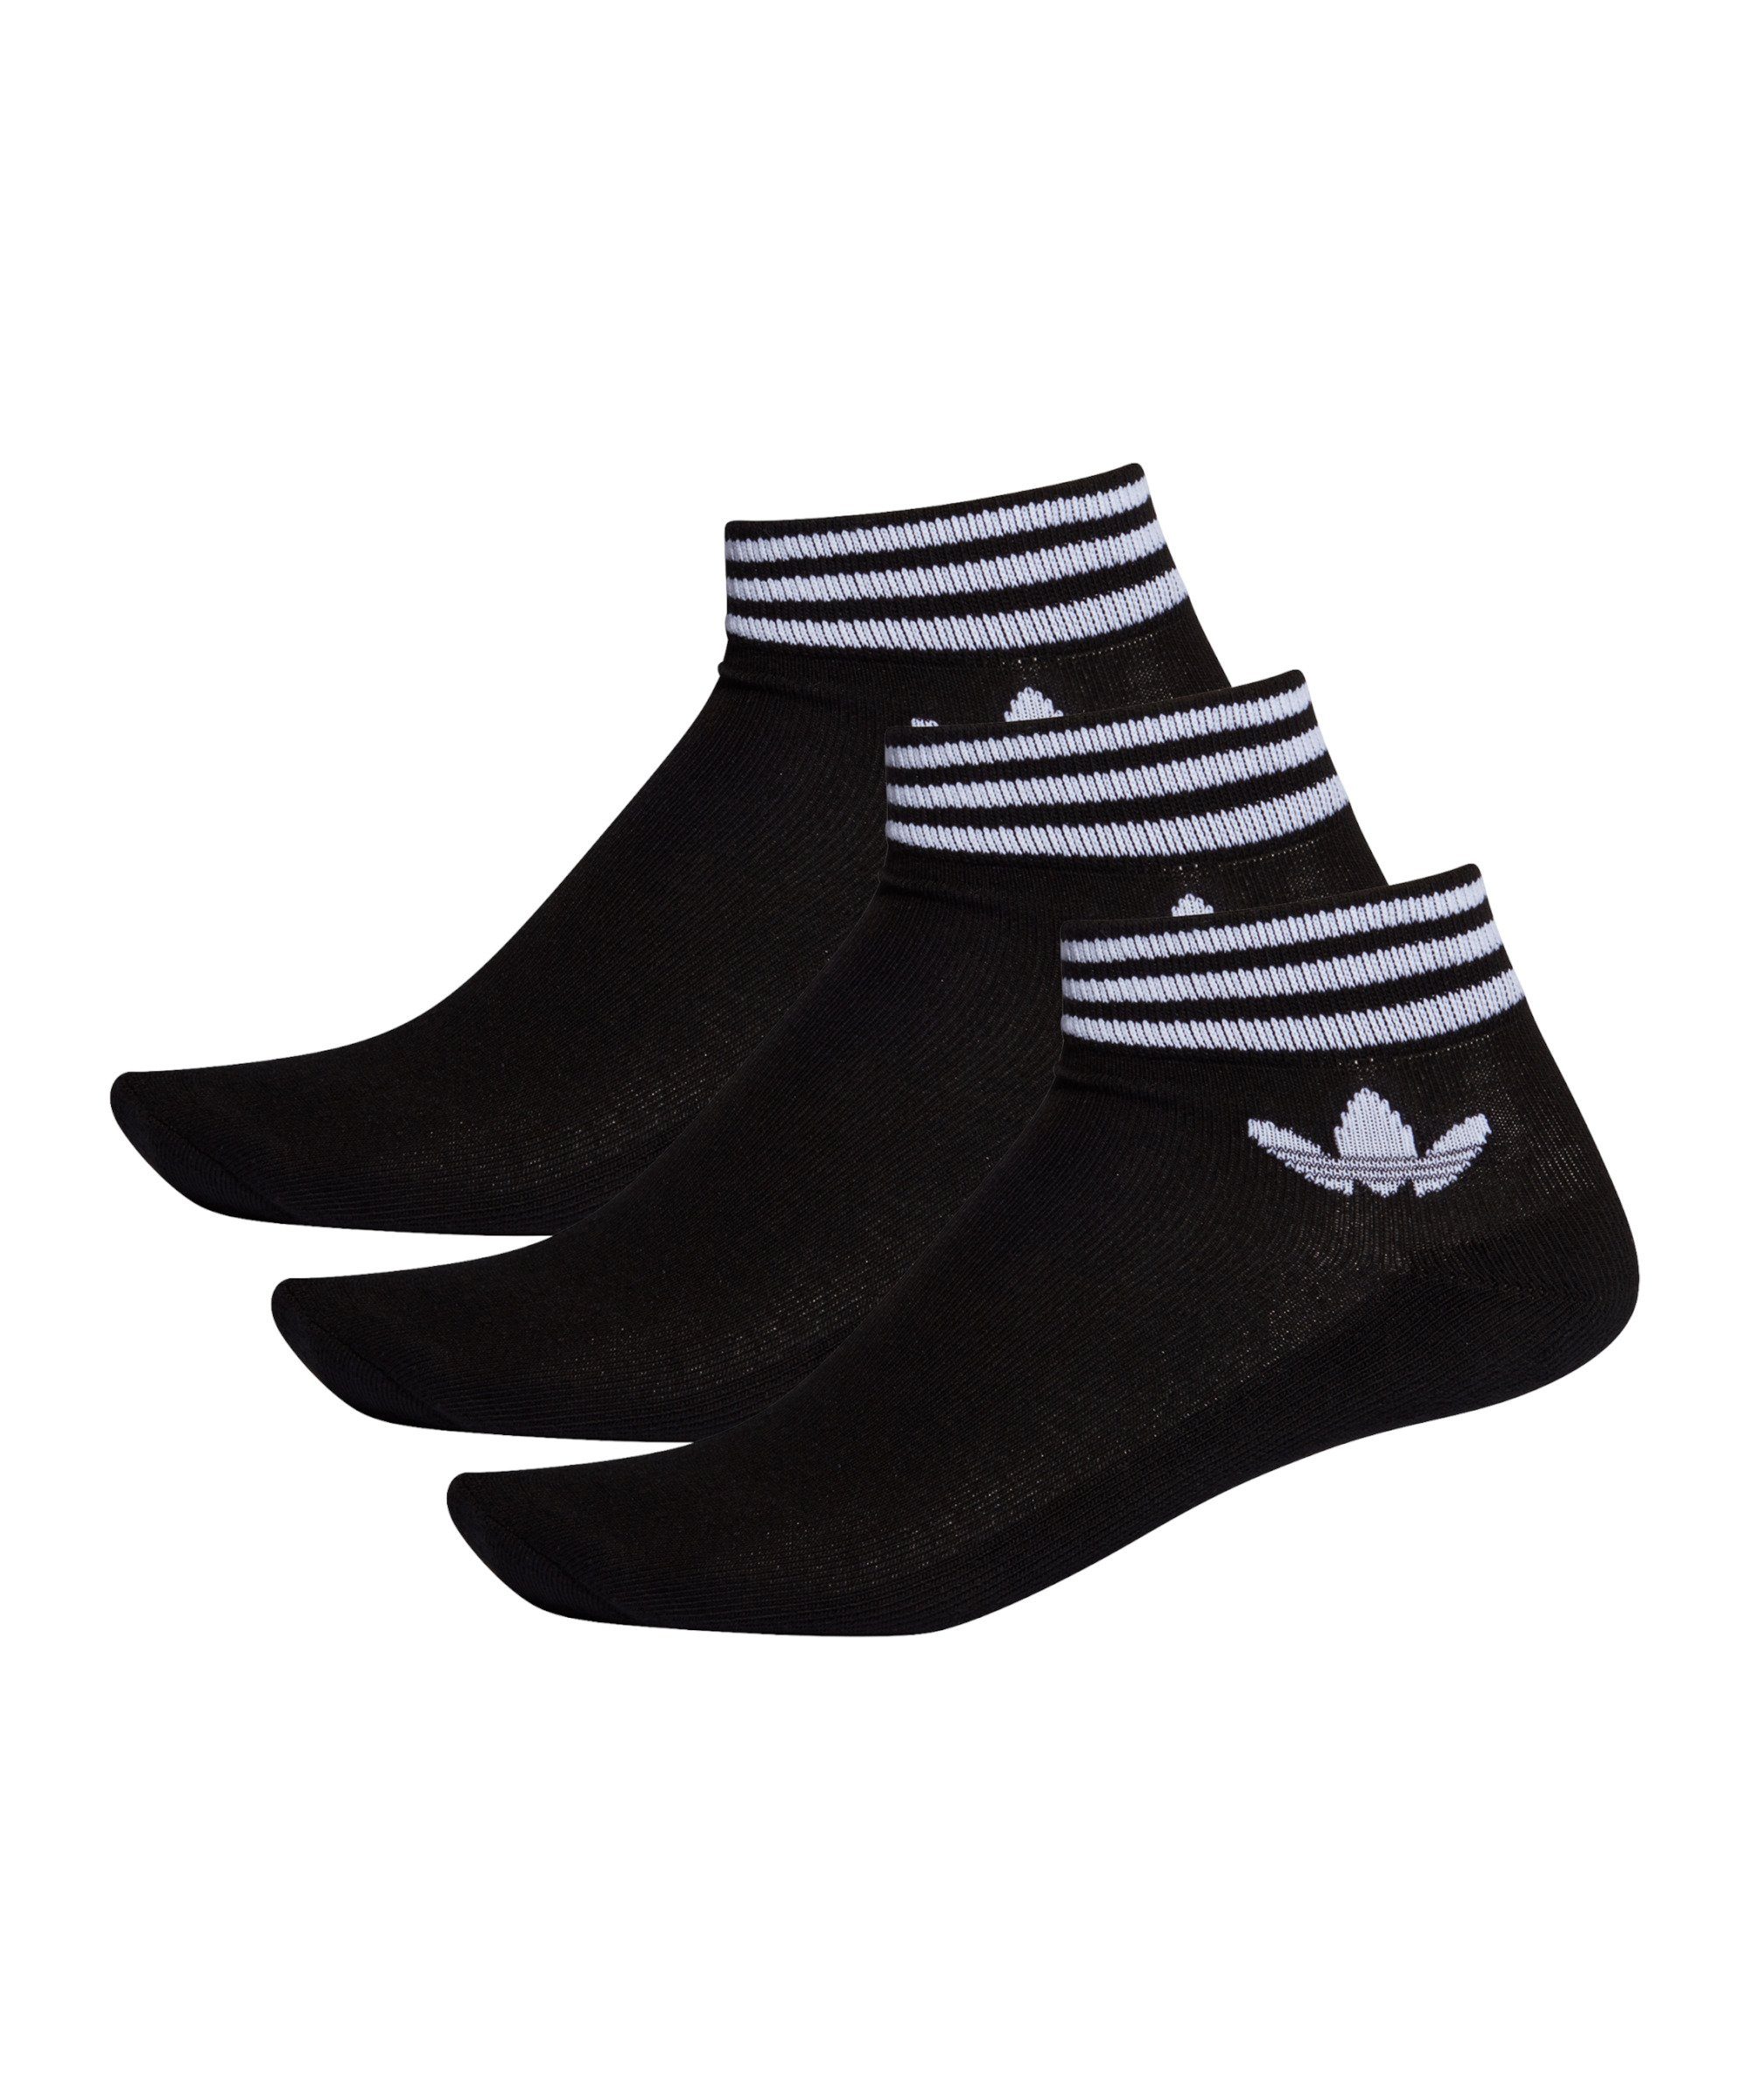 adidas Originals Freizeitsocken Trefoil Ankle Socken default